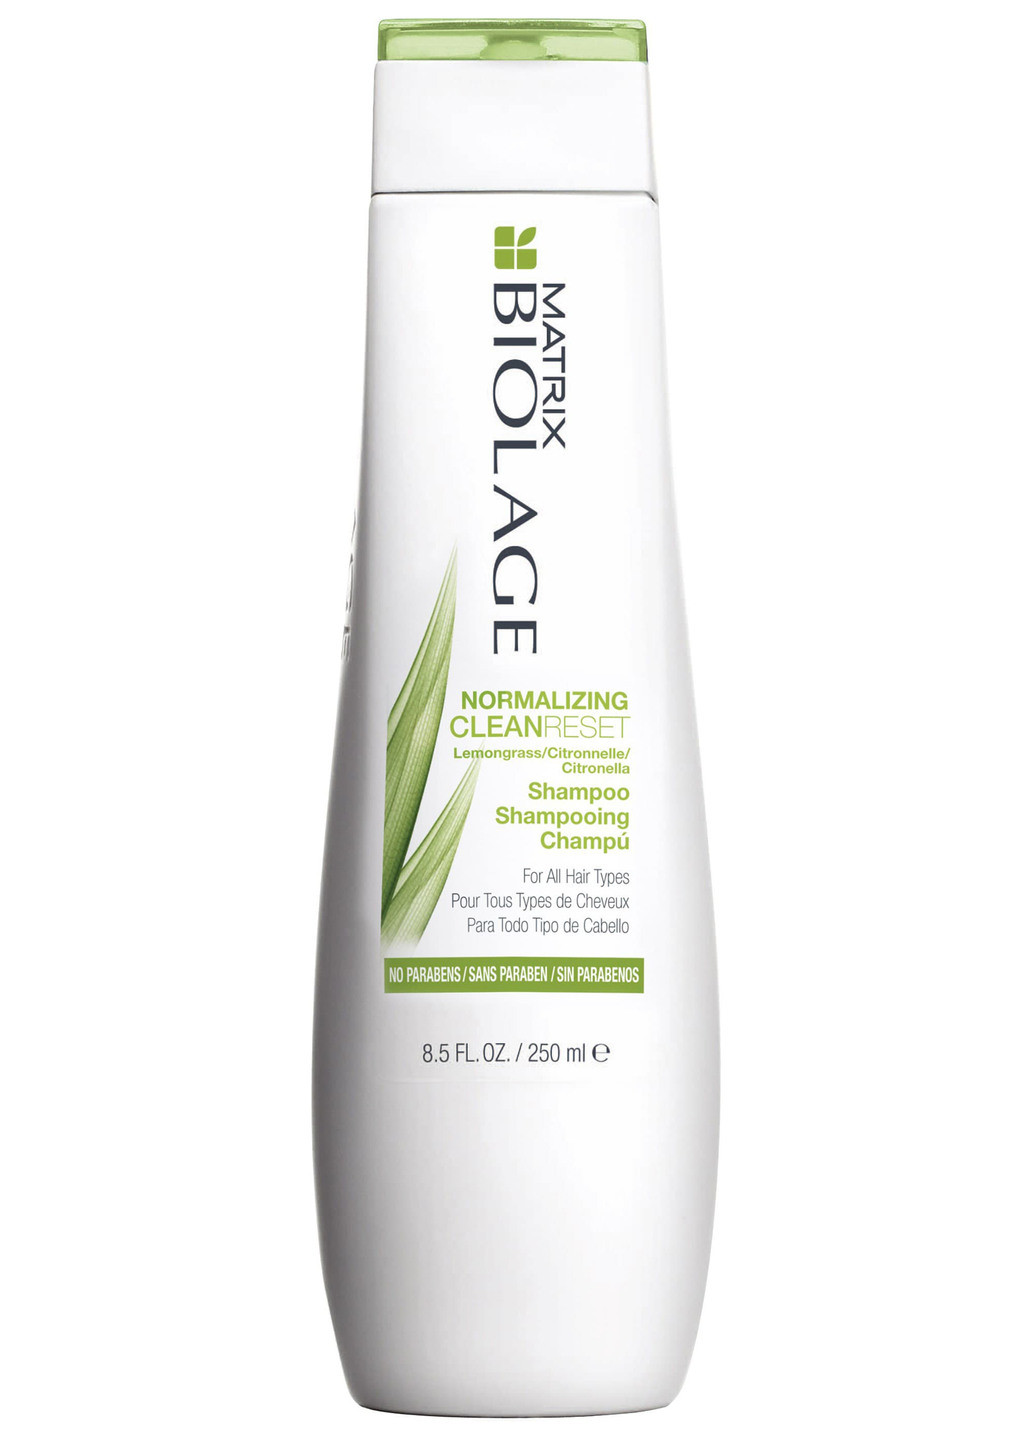 Нормализующий шампунь для жирных волос Matrix Scalpsync Clean Reset Normalizing Shampoo 250 мл Biolage (201694833)